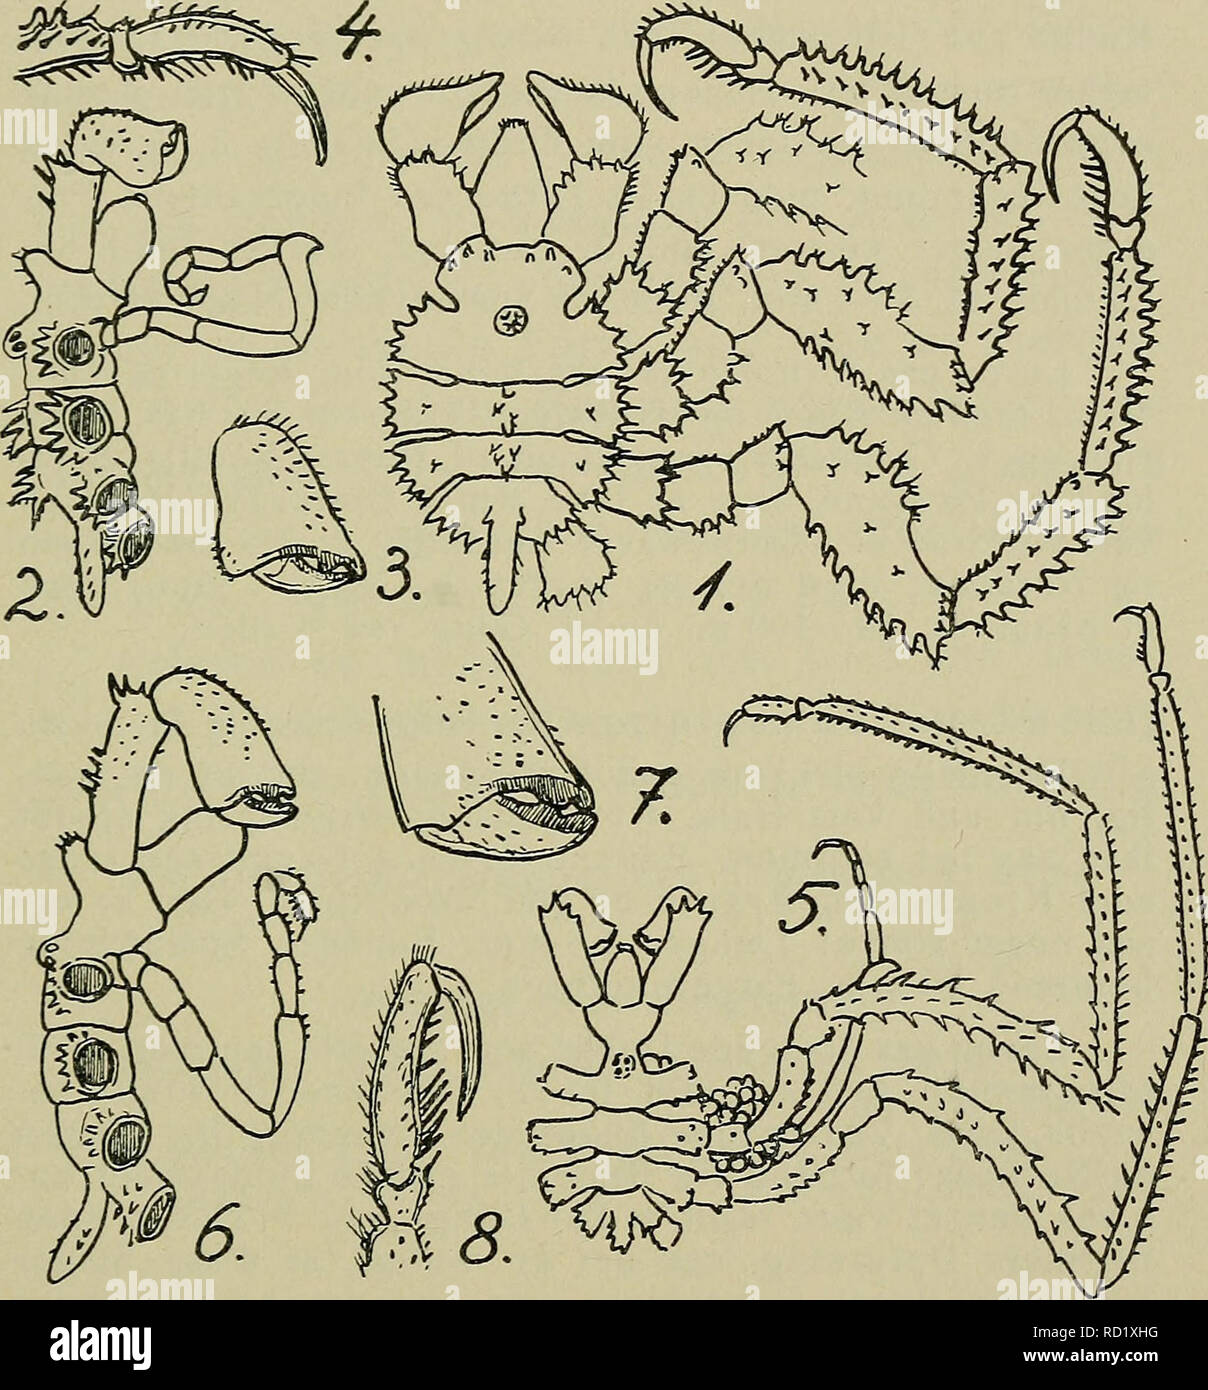 . Danmarks fauna; illustrerede haandbøger over den danske dyreverden... 37 1. Pseudopallérre circulåris (Goodsir) (Ps. inter- média Krøyer, Ps. discoidea Krøyer, Phoxichilus circulåris Norman) (Fig. 11, 1—4). Kroppens Sidefremspring meget brede og næsten sammenstødende, saa at de sammen med det meget korte. Fig. 11. Pseudopallene. 1—4: P. circulåris (1: fra Ryggen, 2: fra højre Side, 3 : Klosaks, 4: Tarseled og Klo). — 5—8: P. spinipes (Fi- gurerne forestiller det samme og i samme Rækkefølge som 1—4).— (1 efter Schimkewitsch 1930, de andre efter G. O. Sars 1891). og brede Hovedsegment danner n Stock Photo